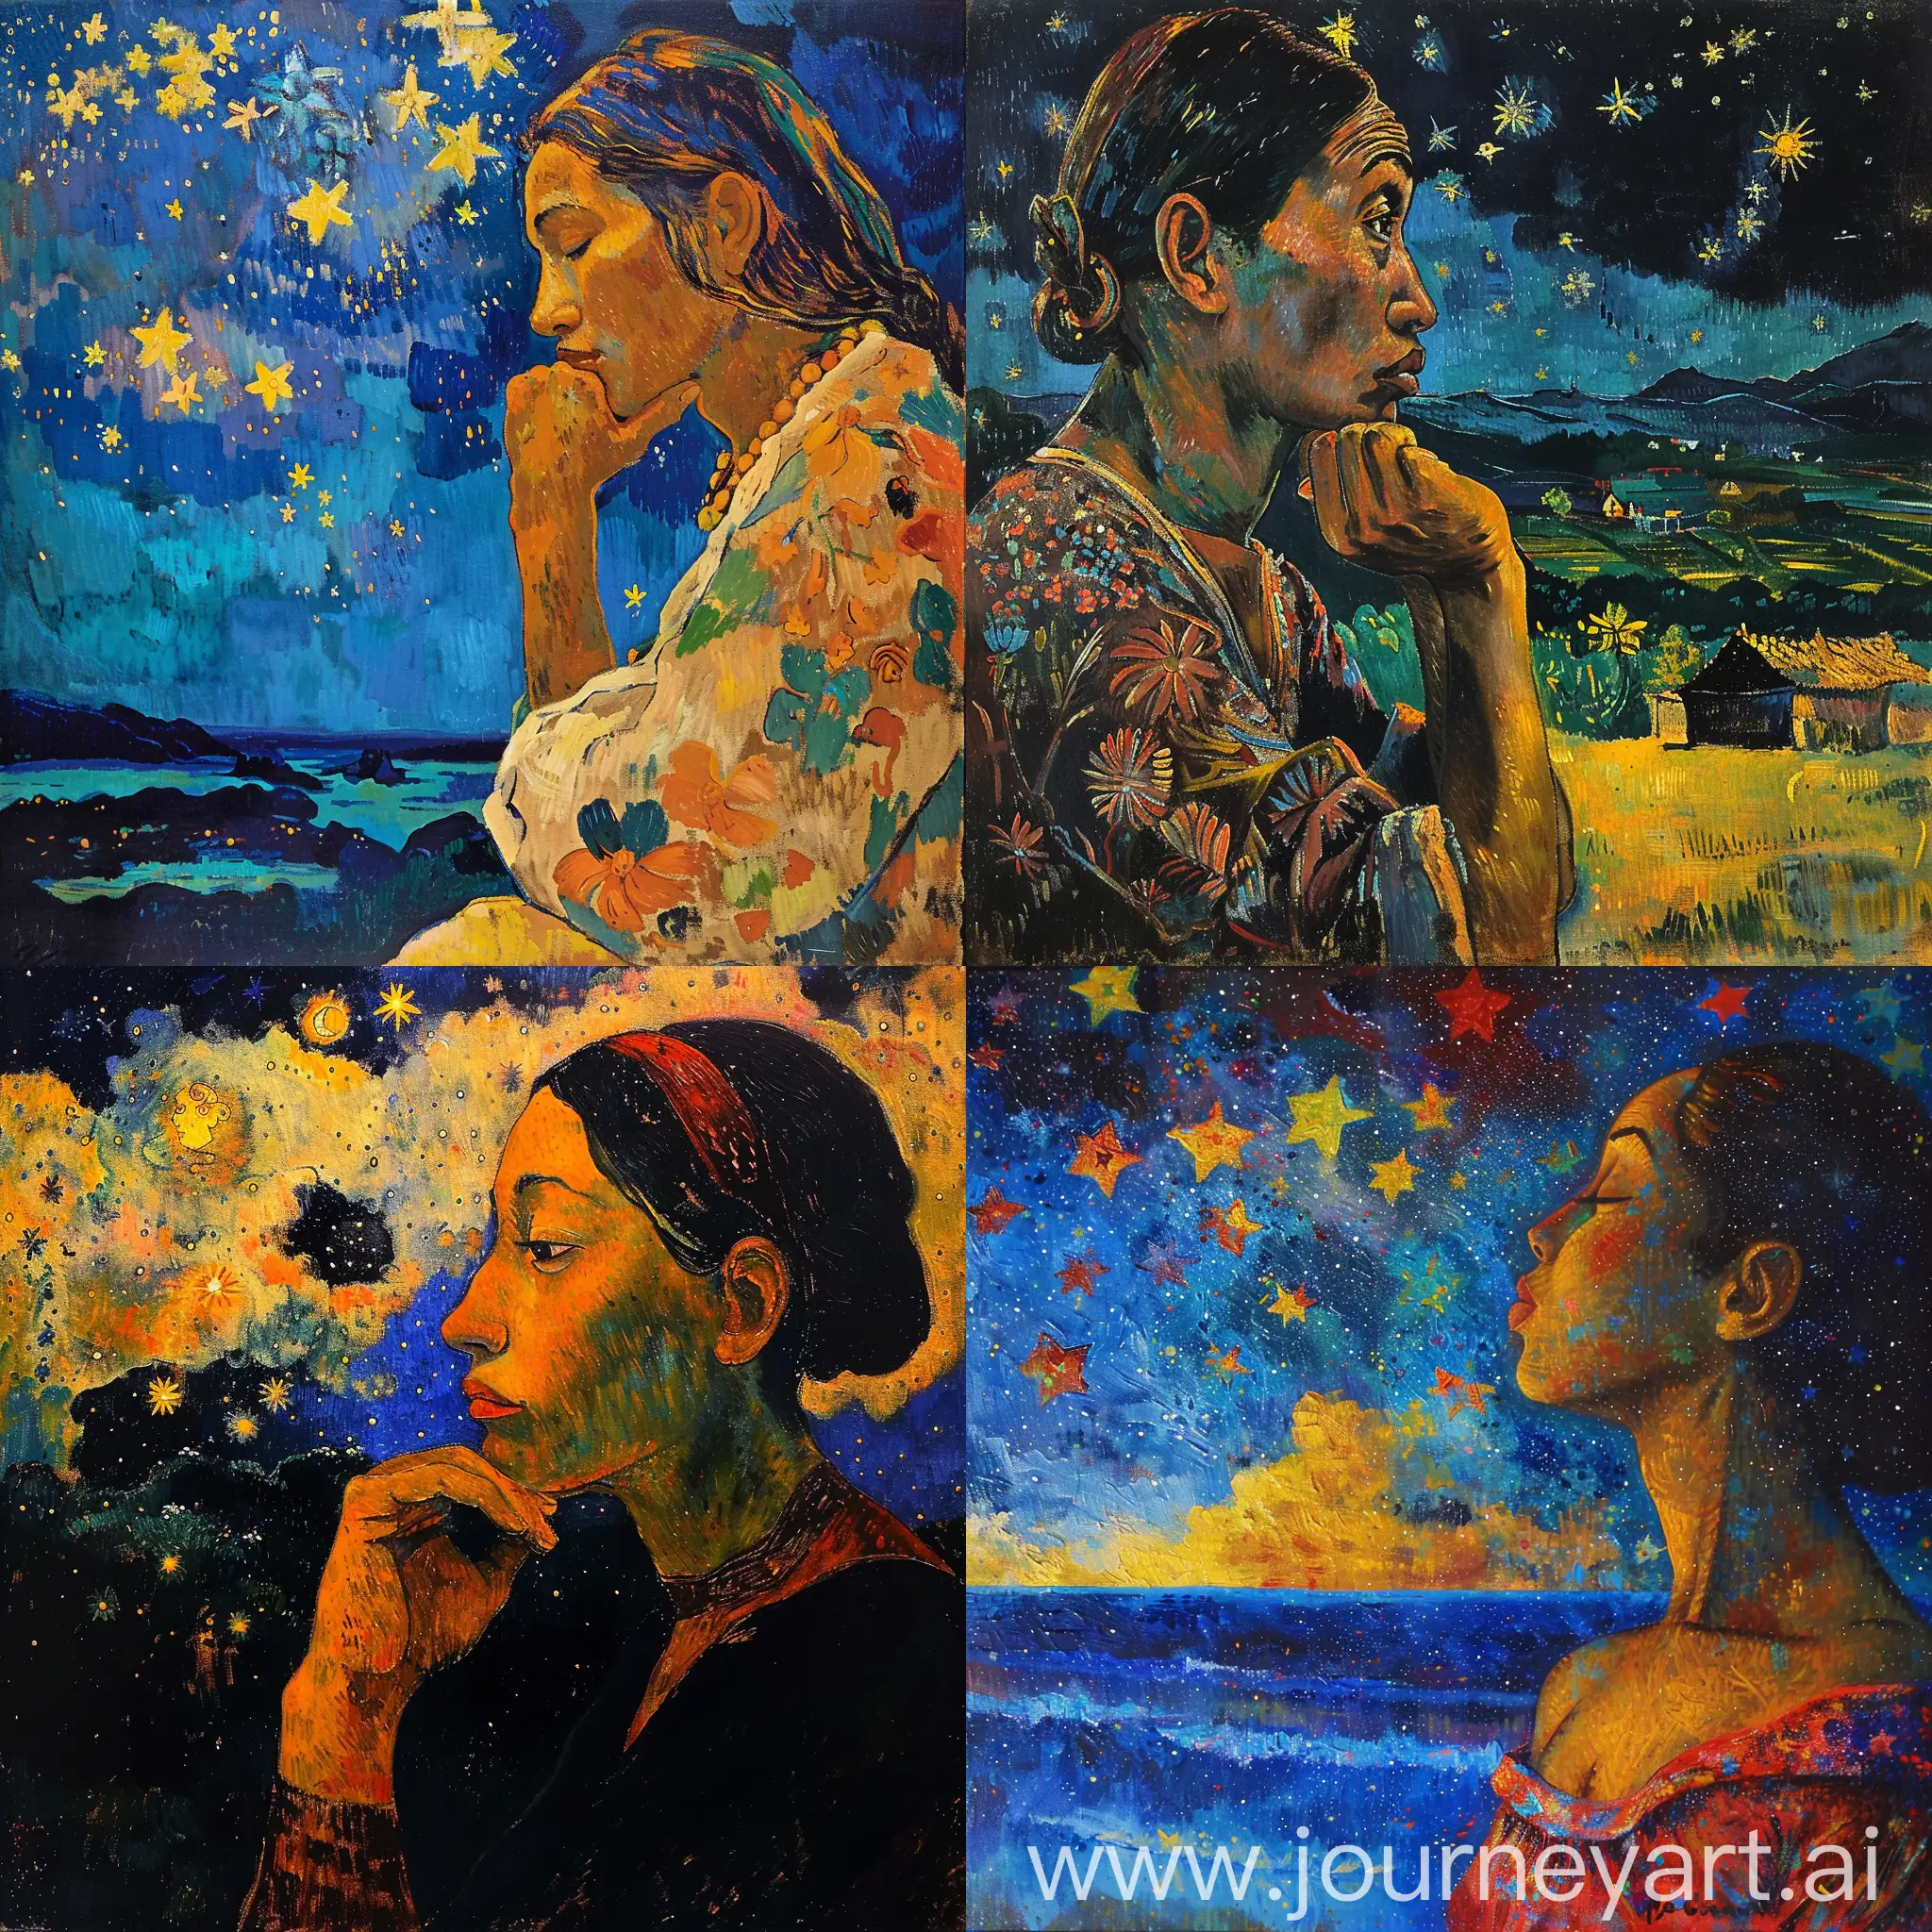 génère la peinture d'une femme regardant les étoiles dans le style de paul gauguin, le format de l'image doit être vertical. masterpiece